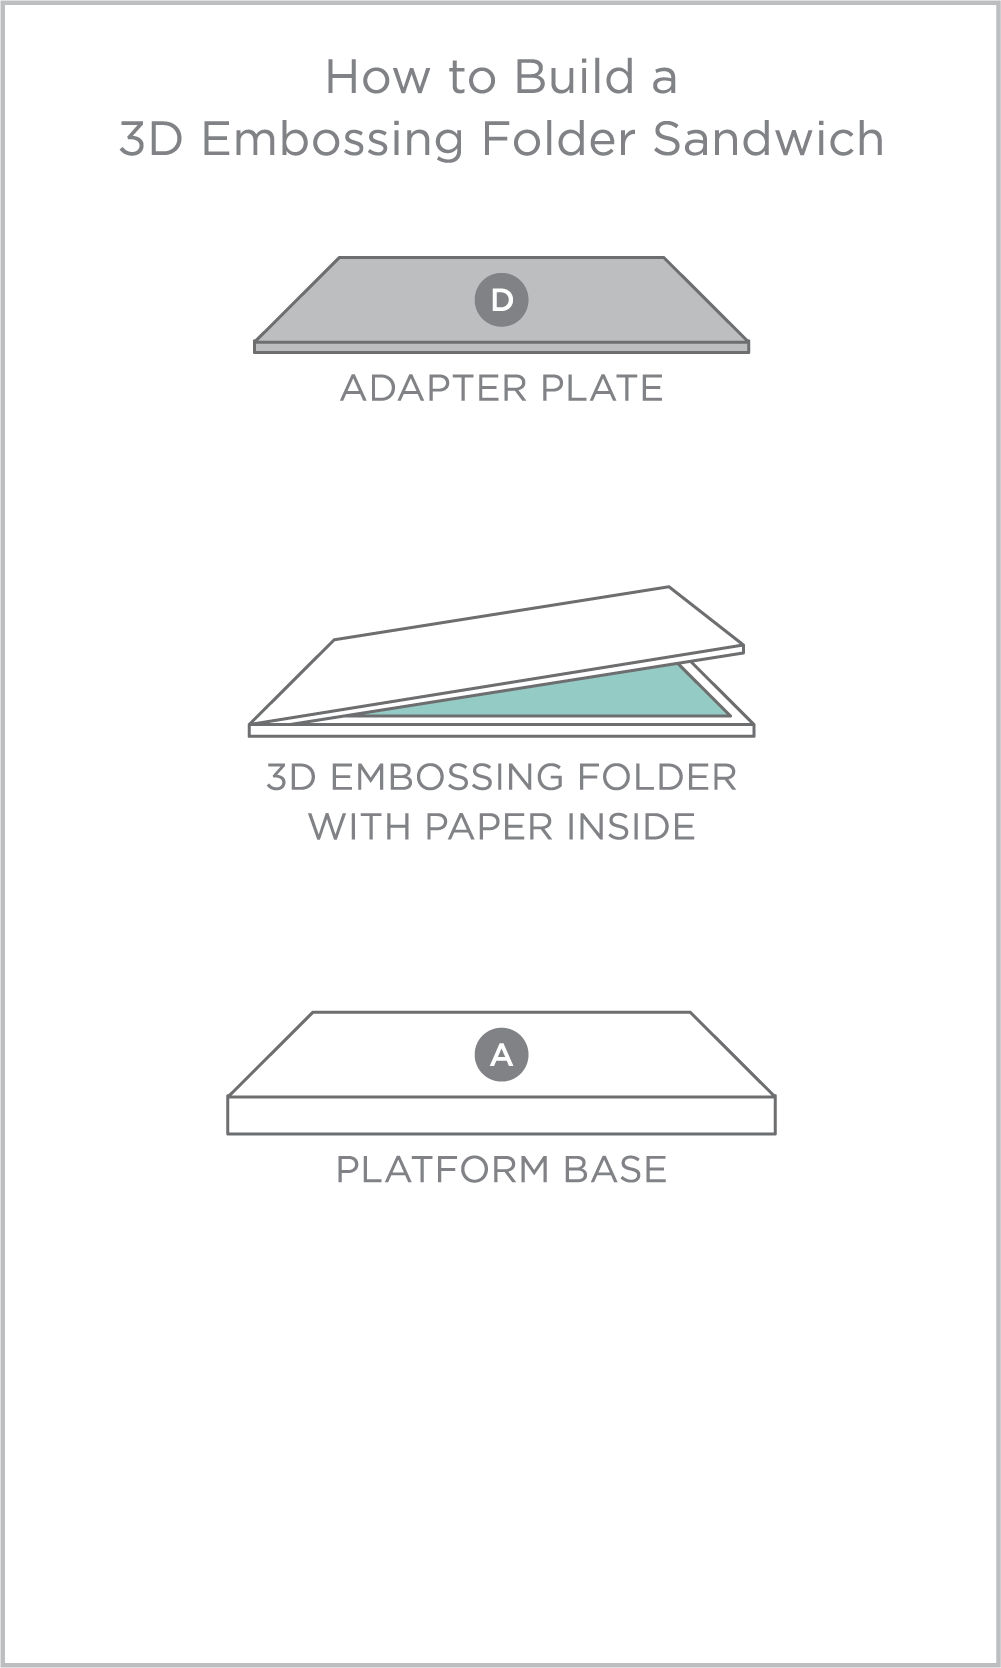 3D Embossing Folder Sandwich